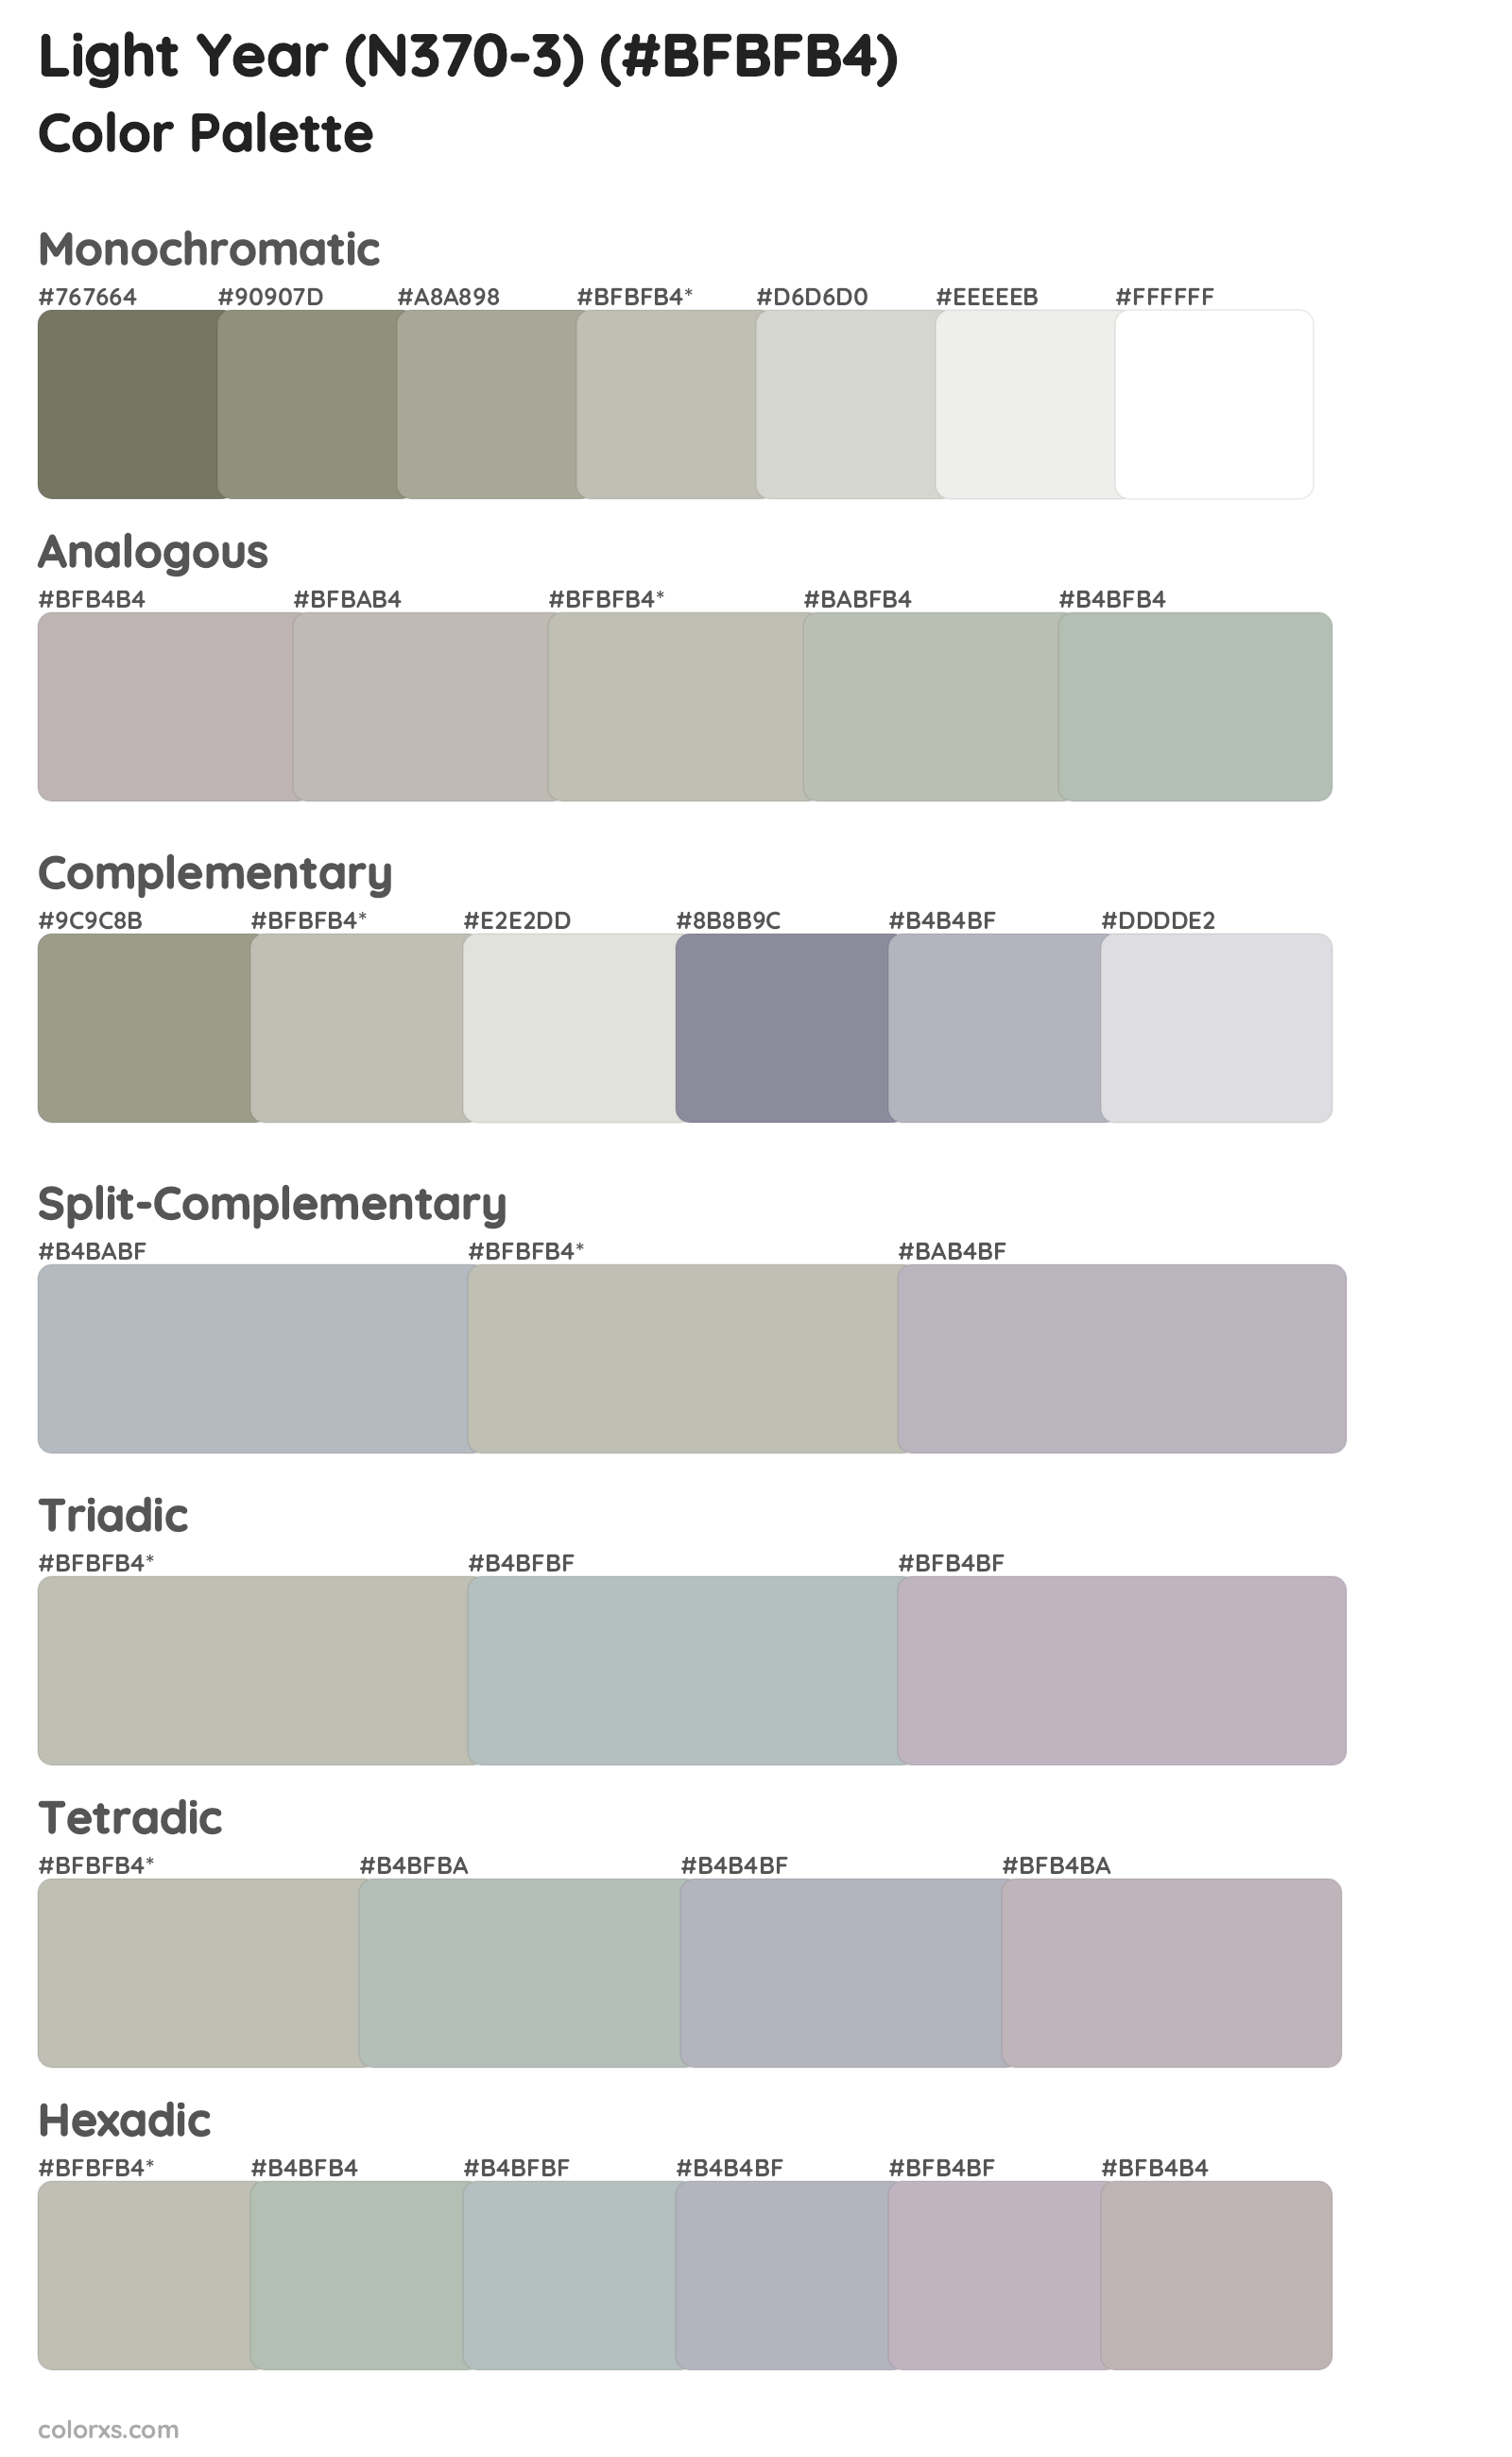 Light Year (N370-3) Color Scheme Palettes